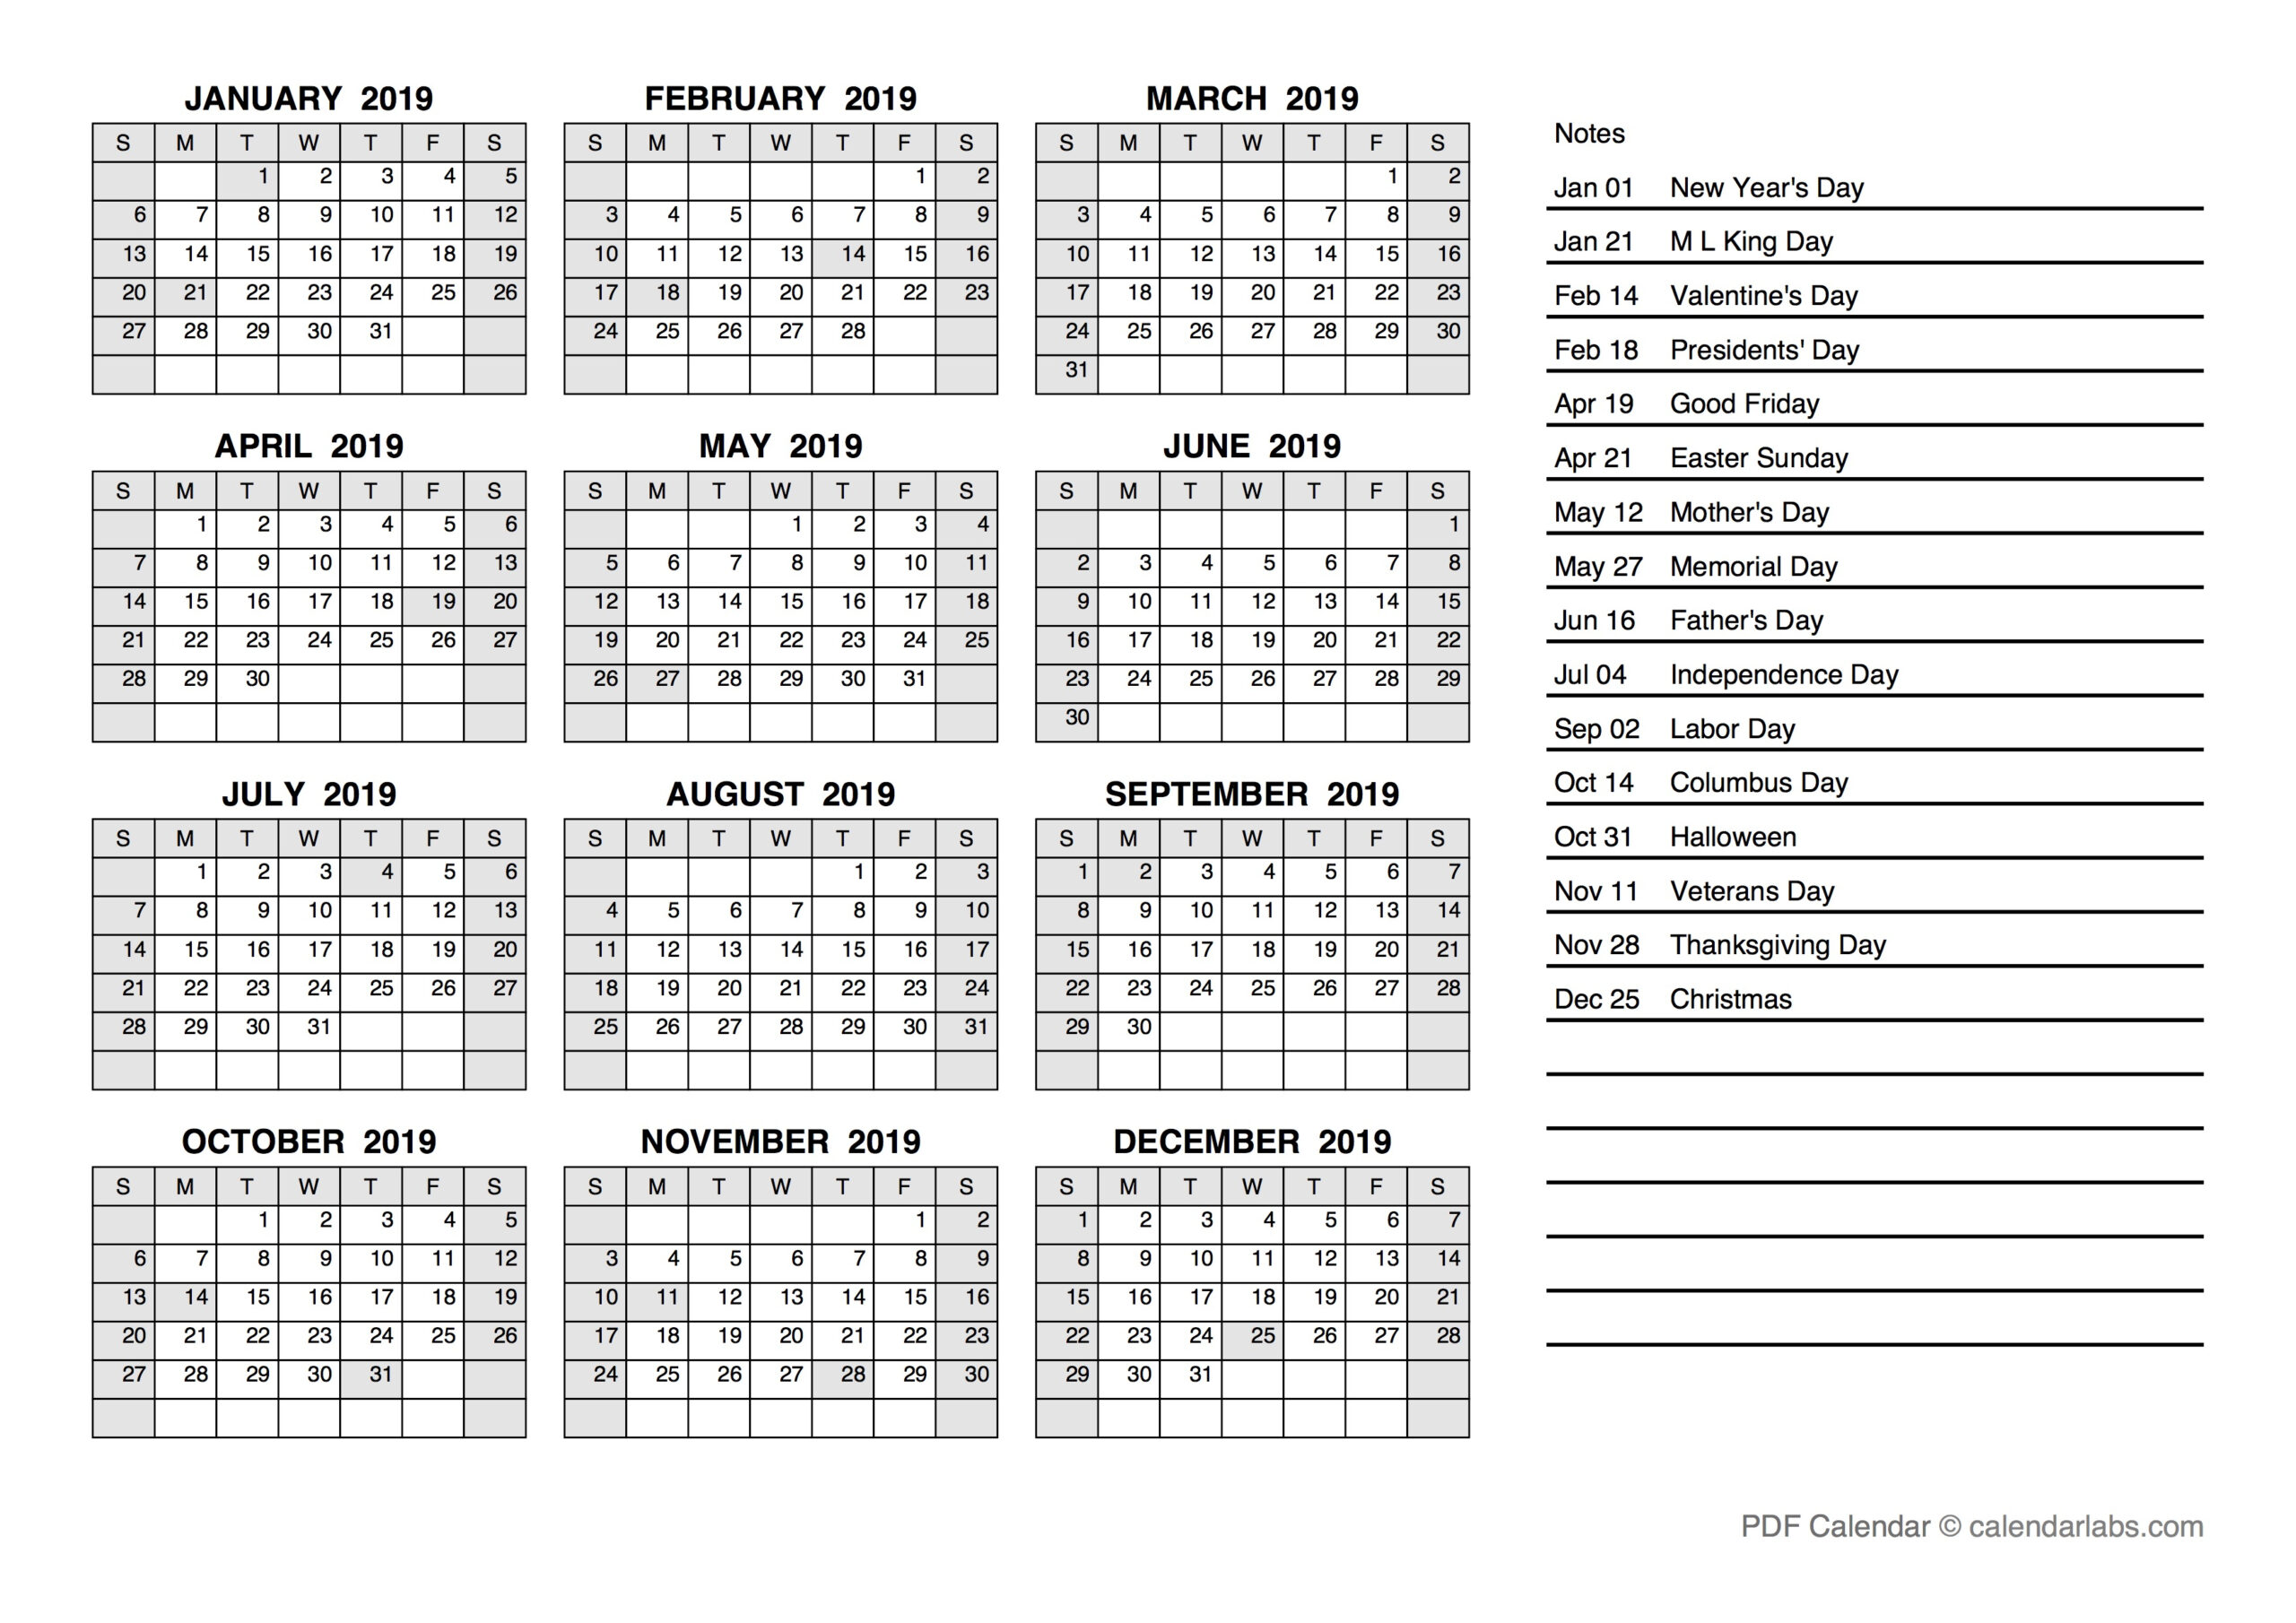 Julian Calendar 2019 Today regarding Quadax Julian Calendar 2018